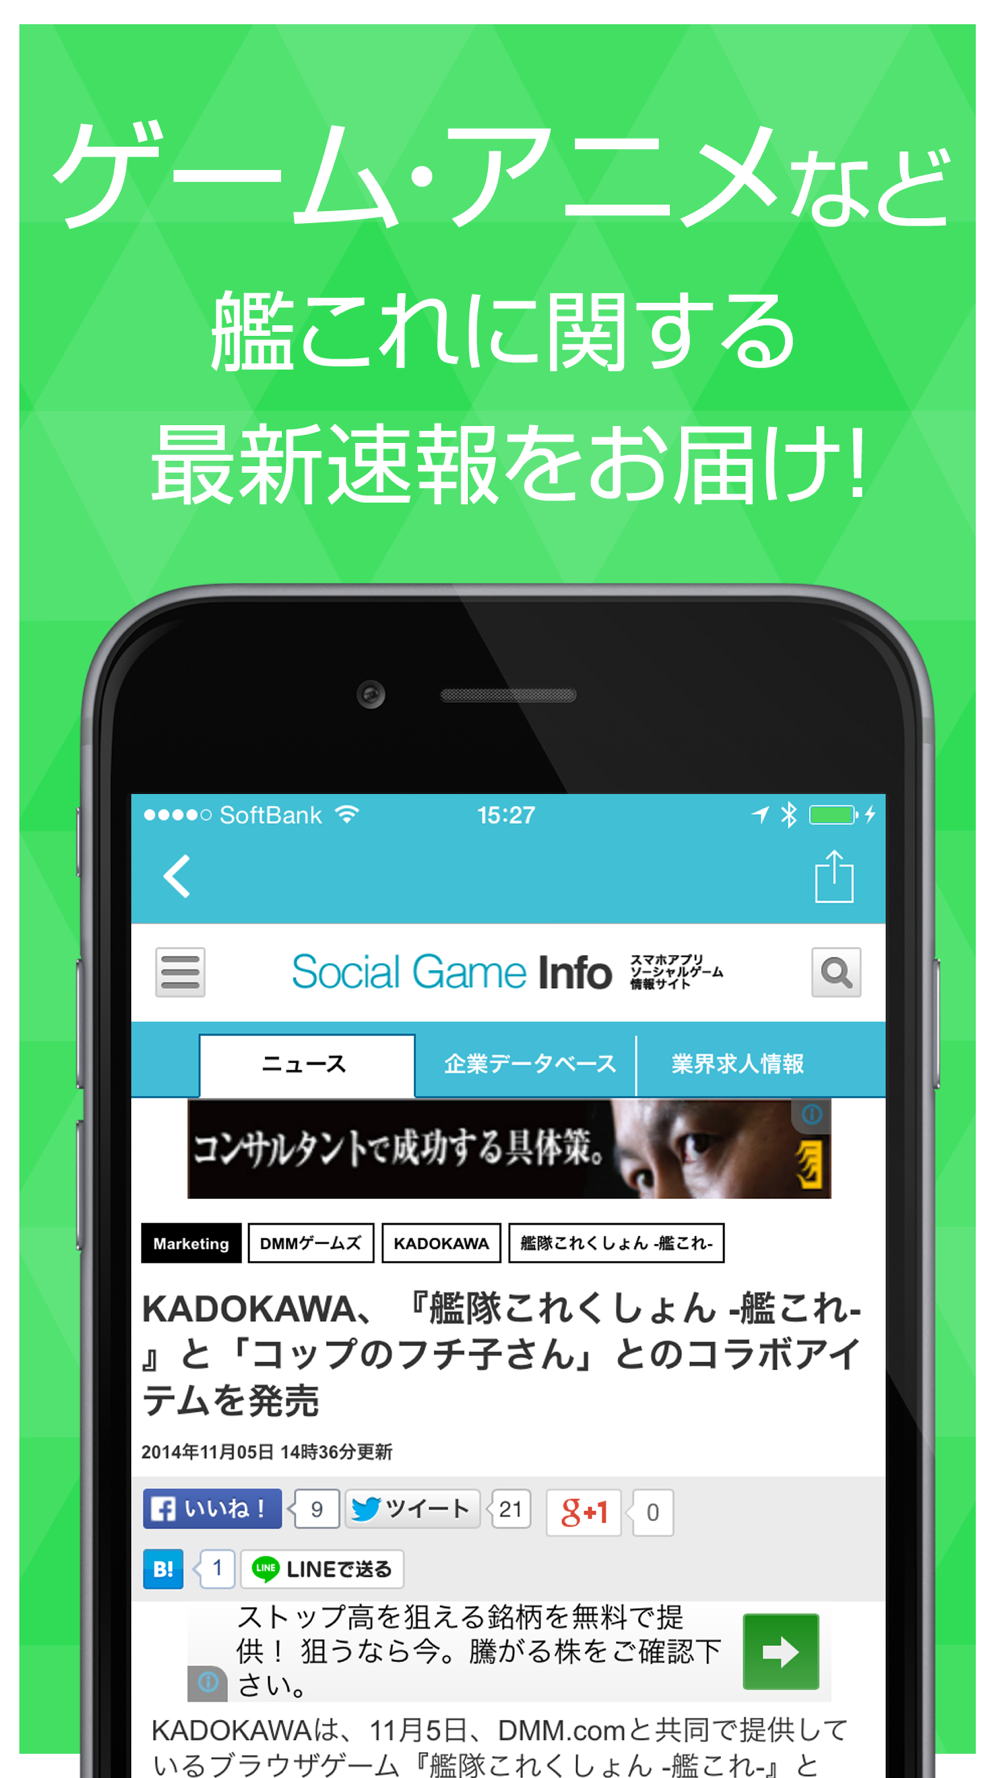 攻略ニュースまとめ速報 For 艦隊これくしょん艦これ Free Download App For Iphone Steprimo Com